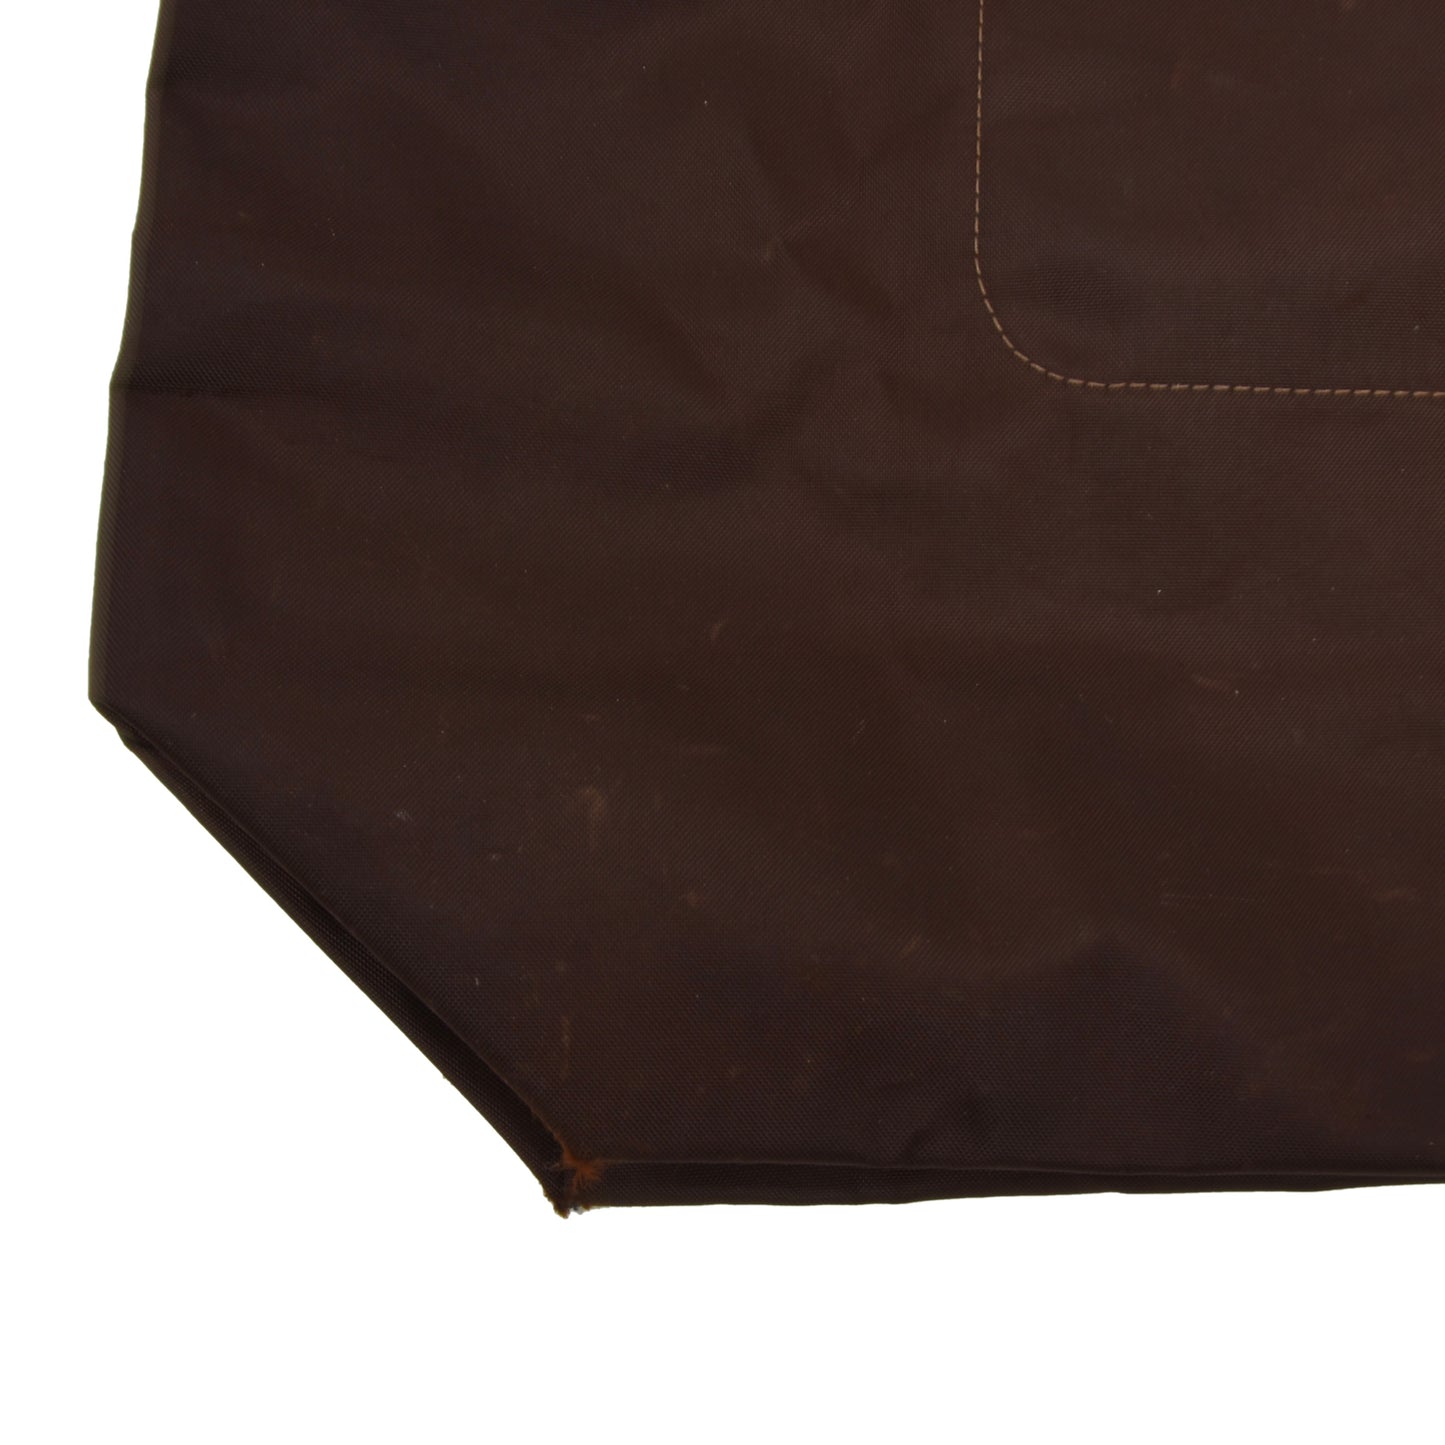 Longchamp Le Pliage Bags x2 Type S & Shopping - Brown